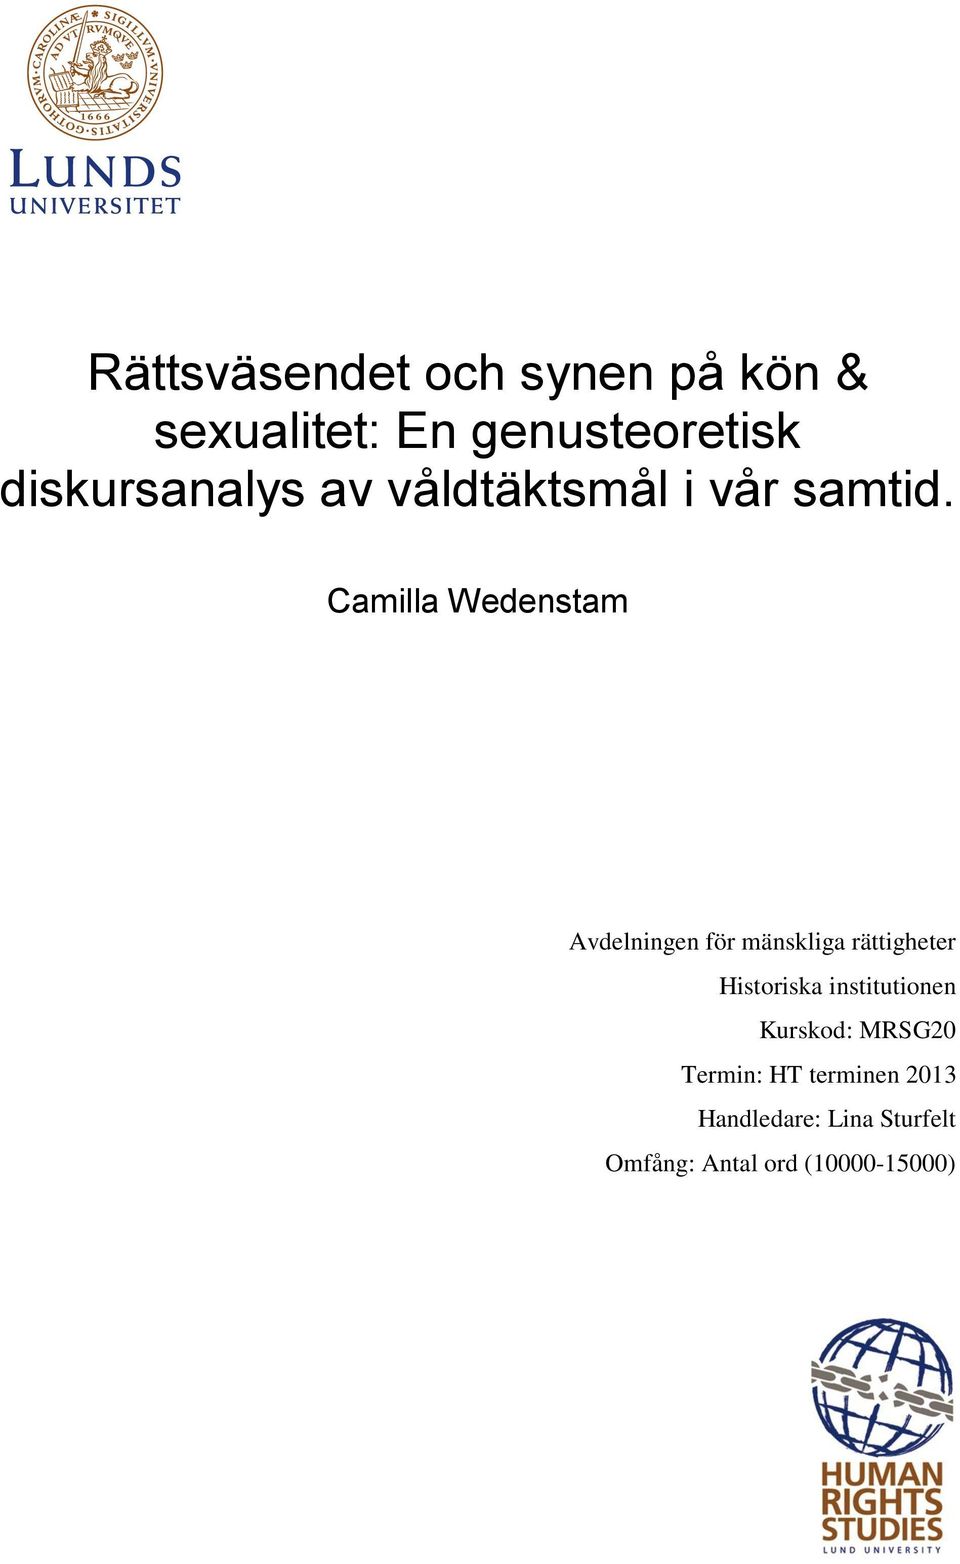 Camilla Wedenstam Avdelningen för mänskliga rättigheter Historiska